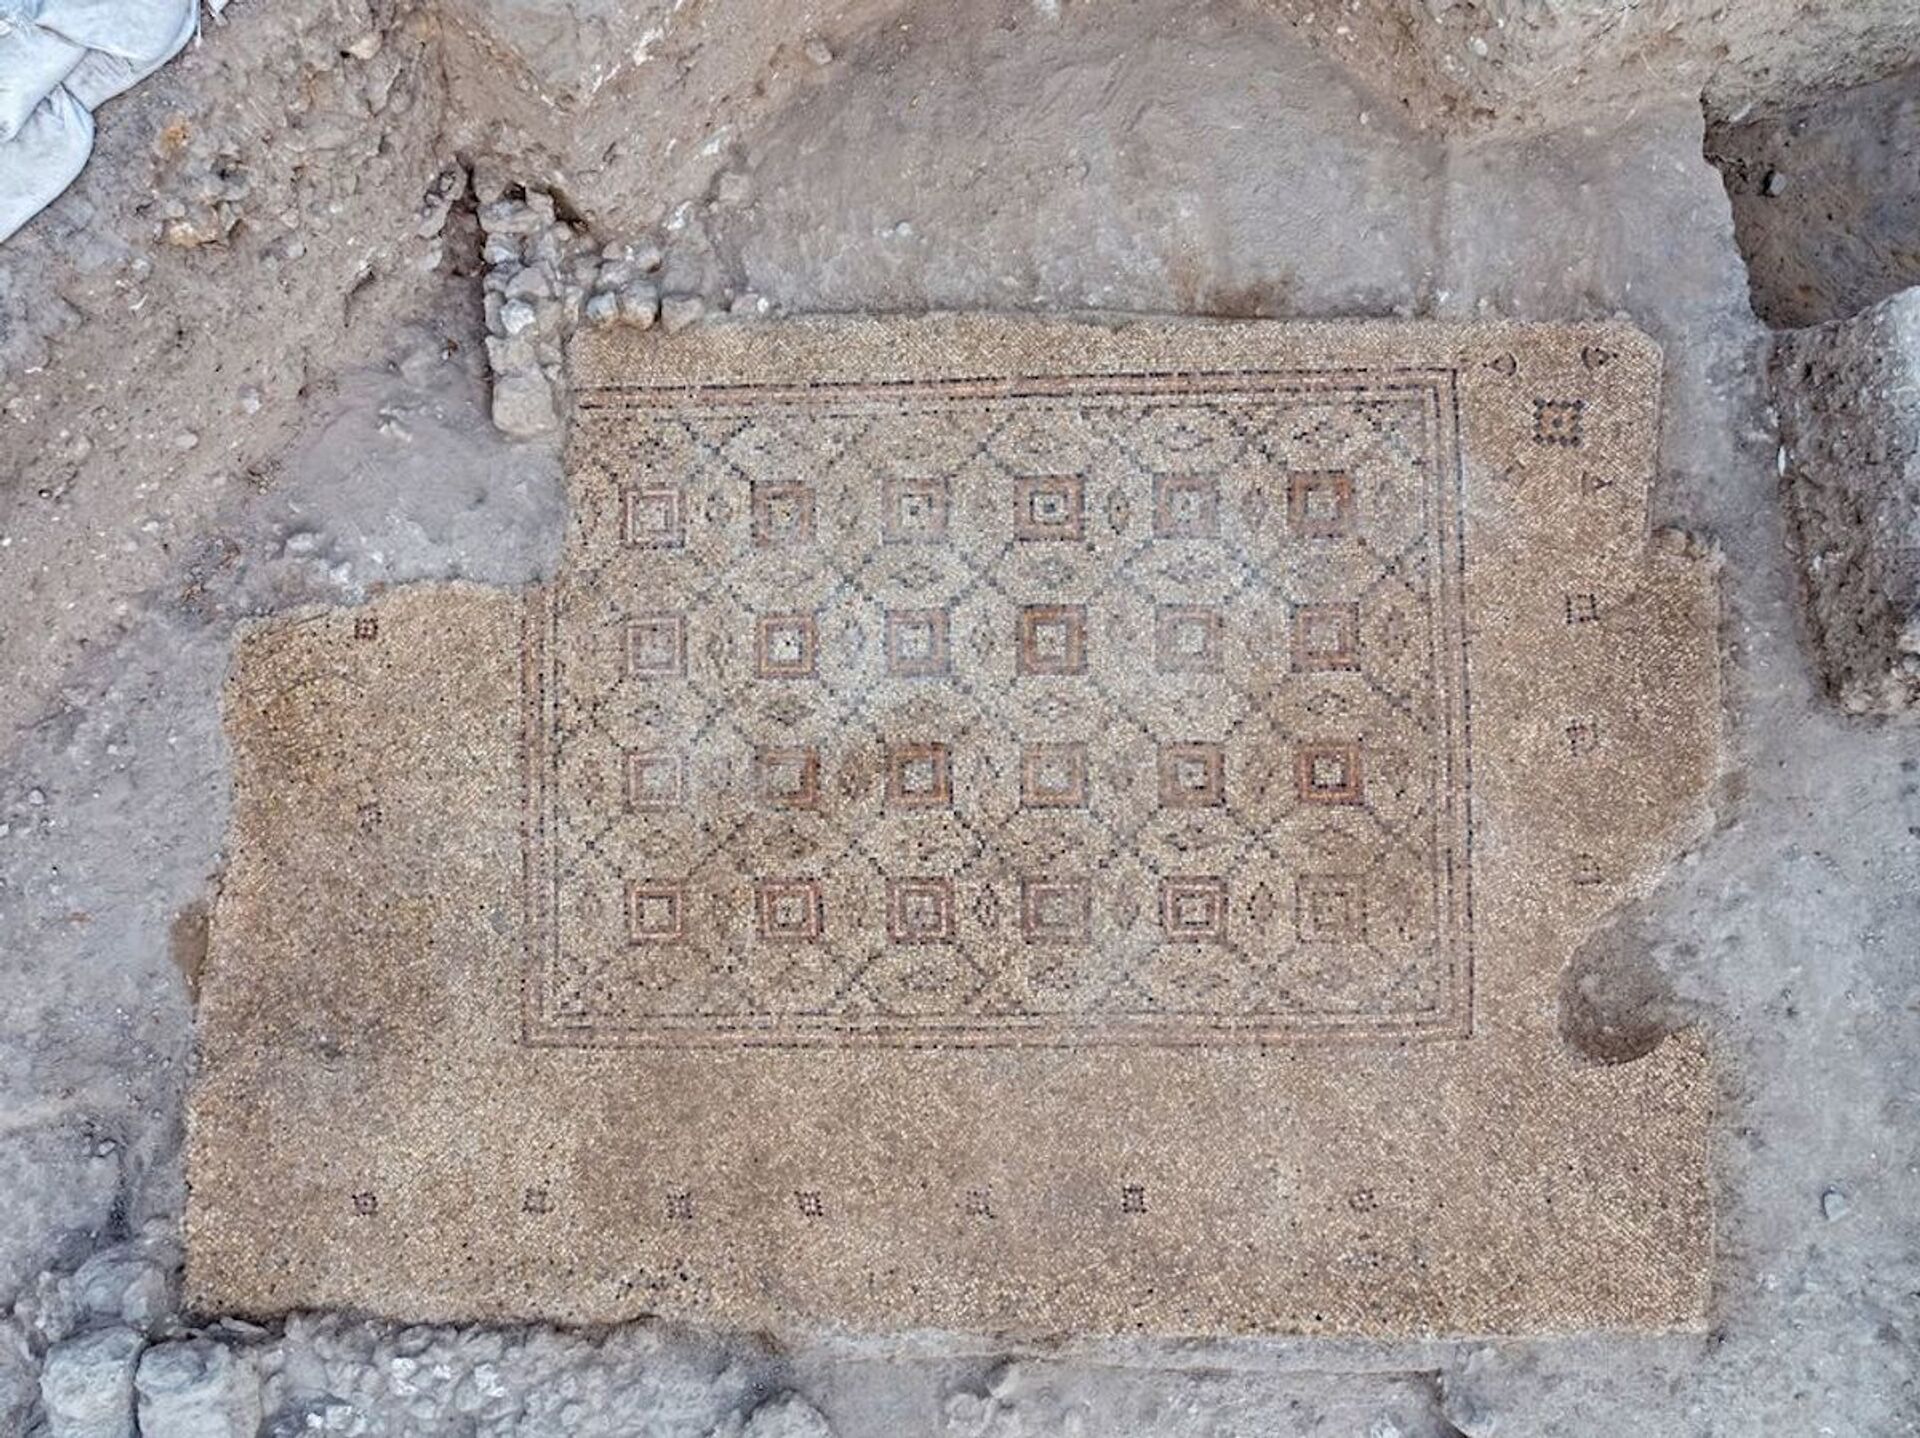 Tapete pomposo: mosaico de cerca de 1.600 anos é desenterrado em cidade israelense (FOTOS) - Sputnik Brasil, 1920, 26.04.2021